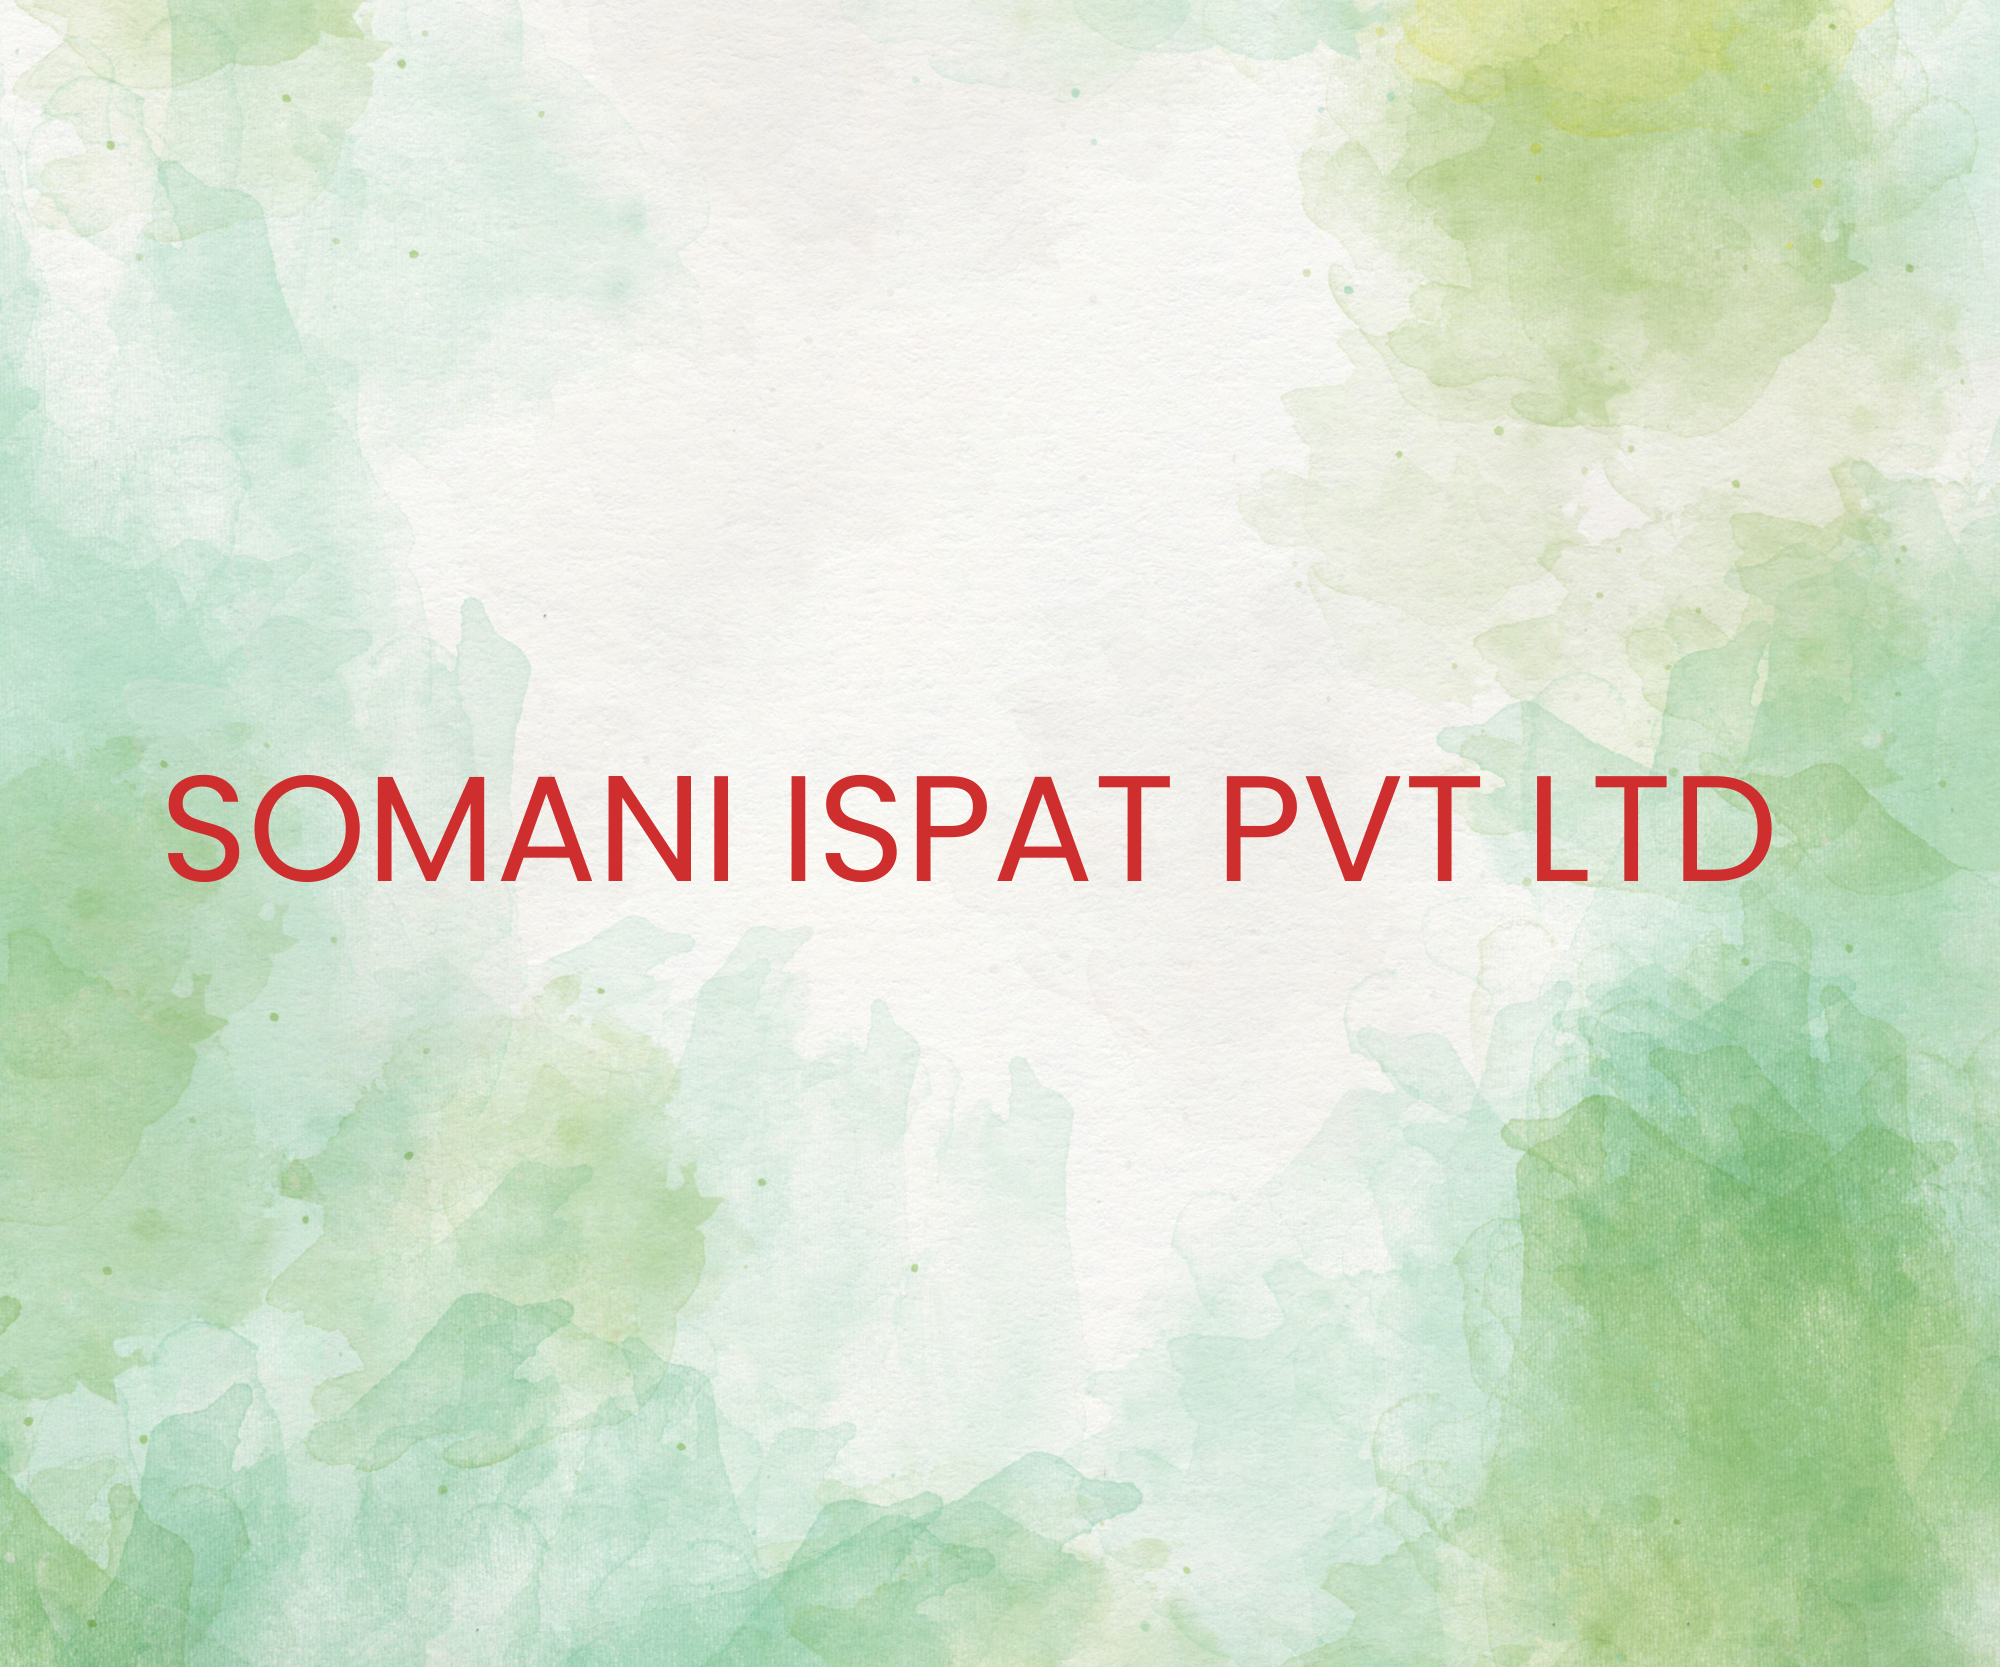 SOMANI ISPAT PVT LTD